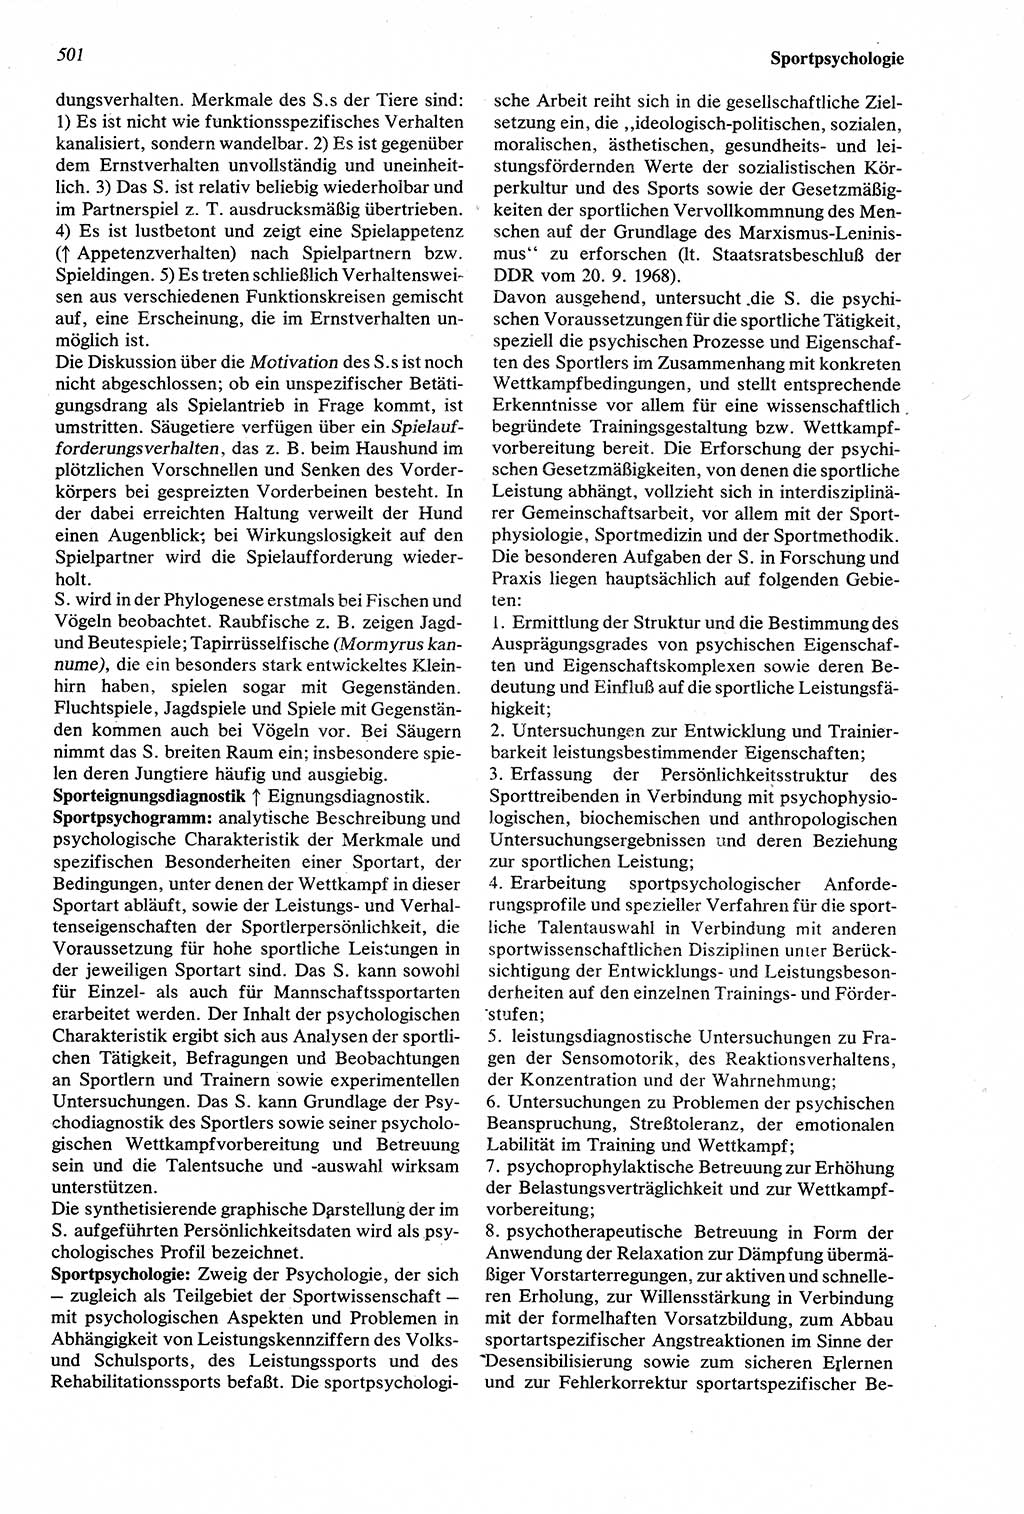 Wörterbuch der Psychologie [Deutsche Demokratische Republik (DDR)] 1976, Seite 501 (Wb. Psych. DDR 1976, S. 501)